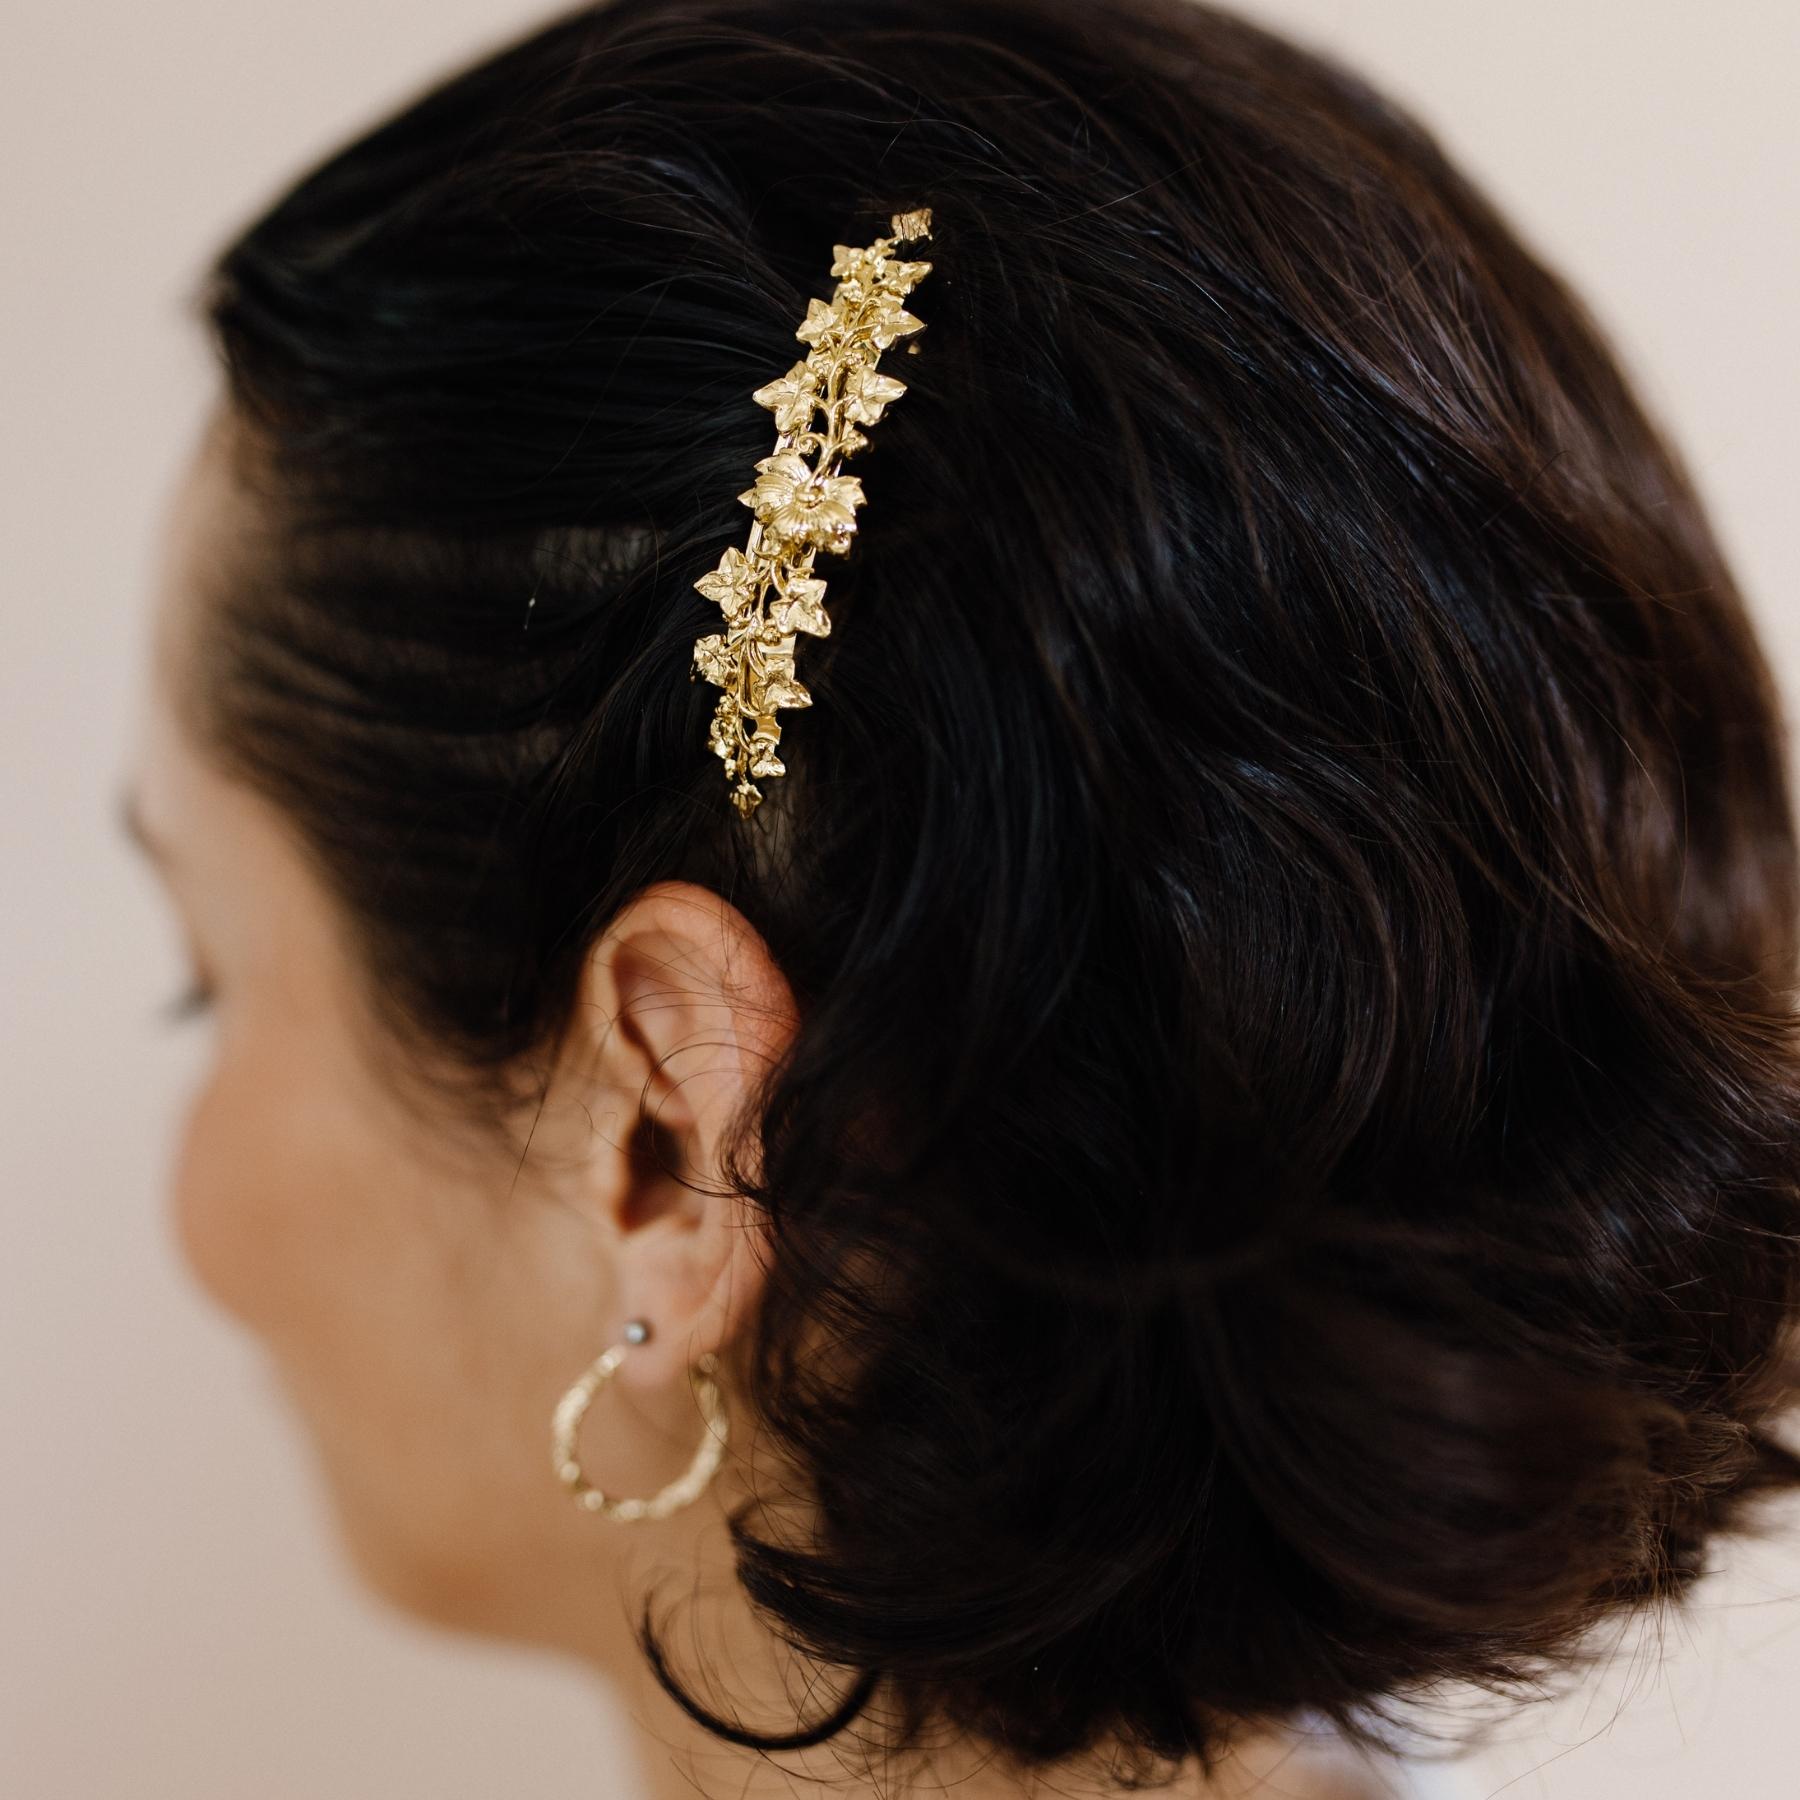 Coiffure femme cheveux courts décorée d'une petite barrette dorée fleurie 